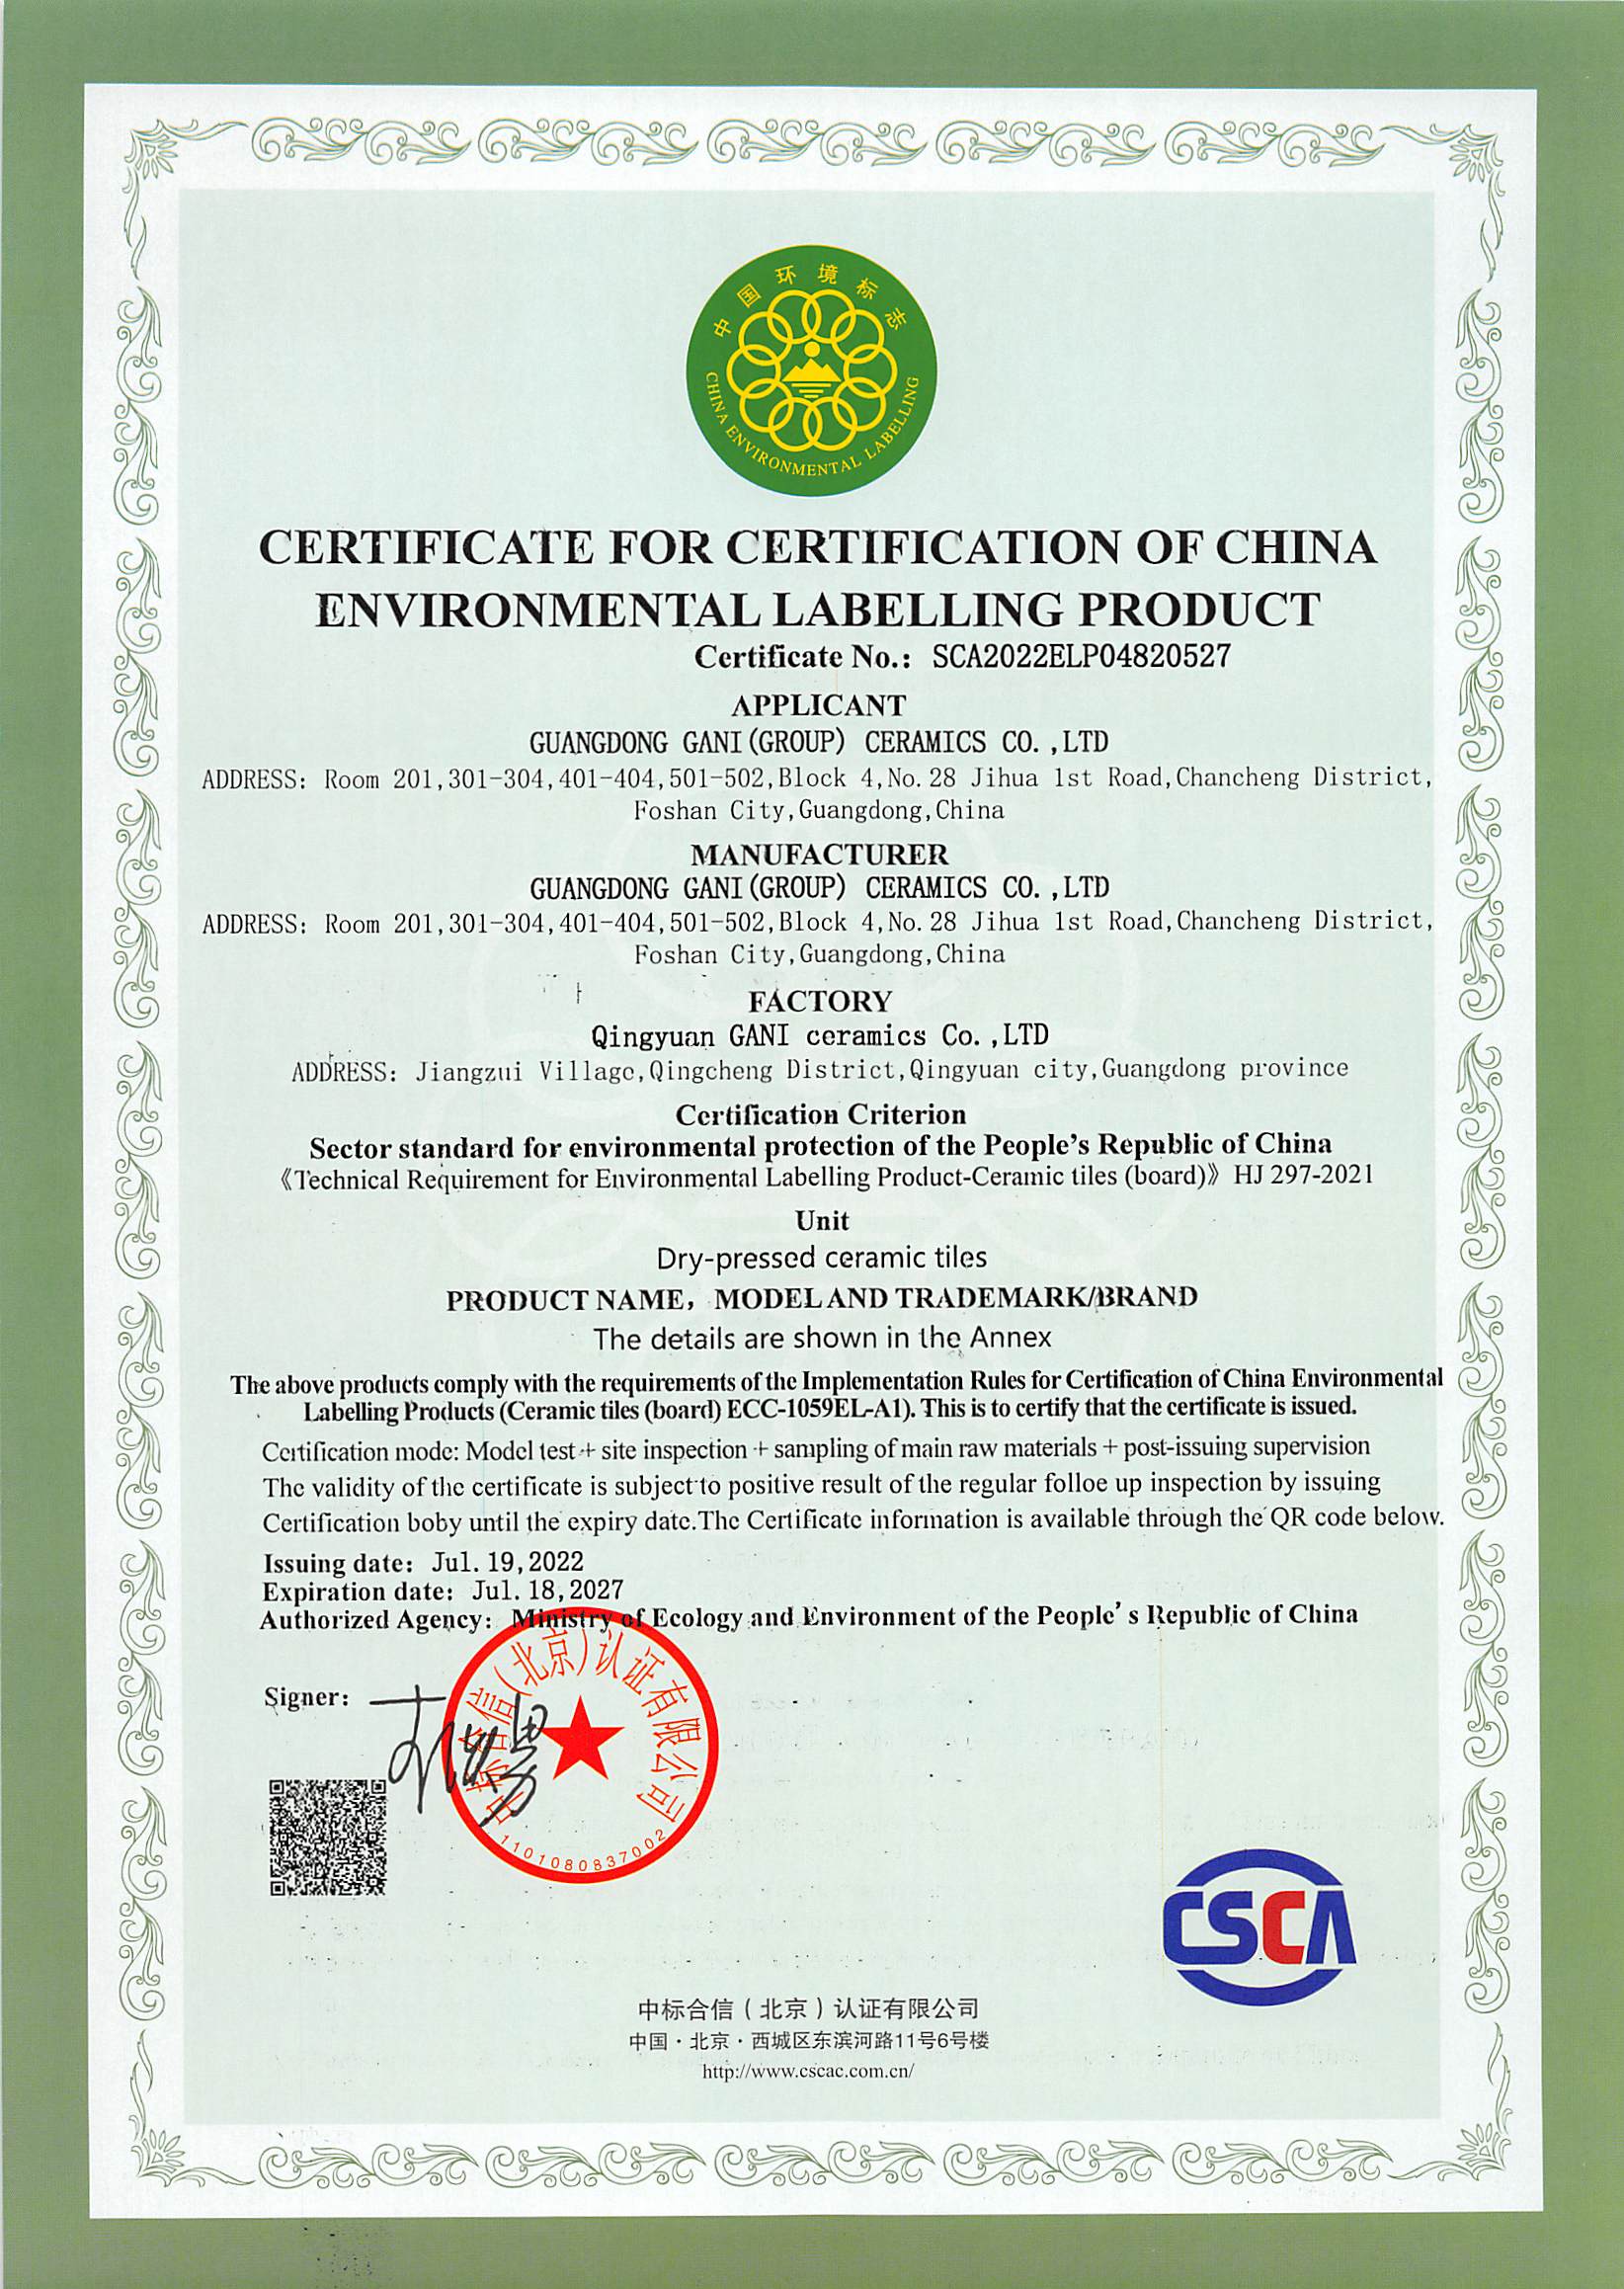 中国环境标志产品认证证书-广东简一（集团）陶瓷有限公司（英文）(1)_页面_1.jpg